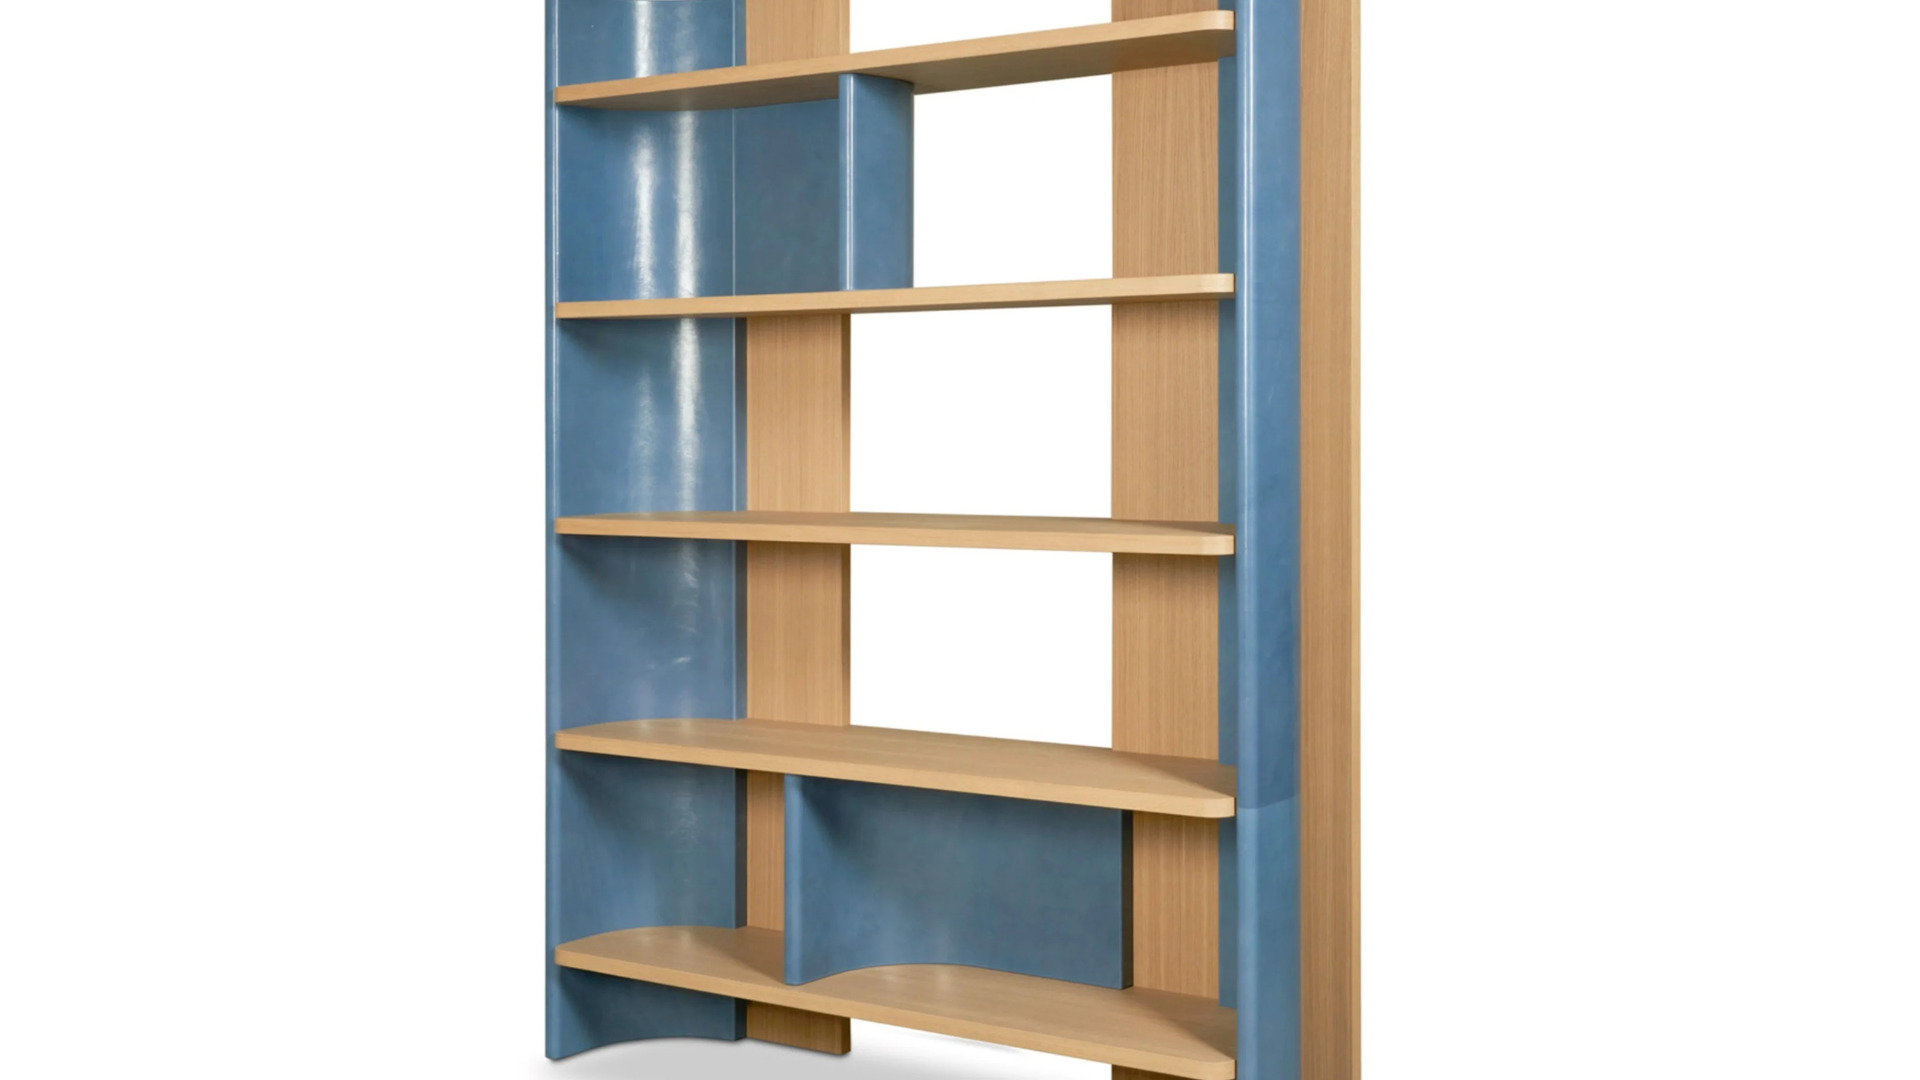 Baxter Joni Libreria boekenkast hoge kast bookcase HORA Barneveld 6.jpg